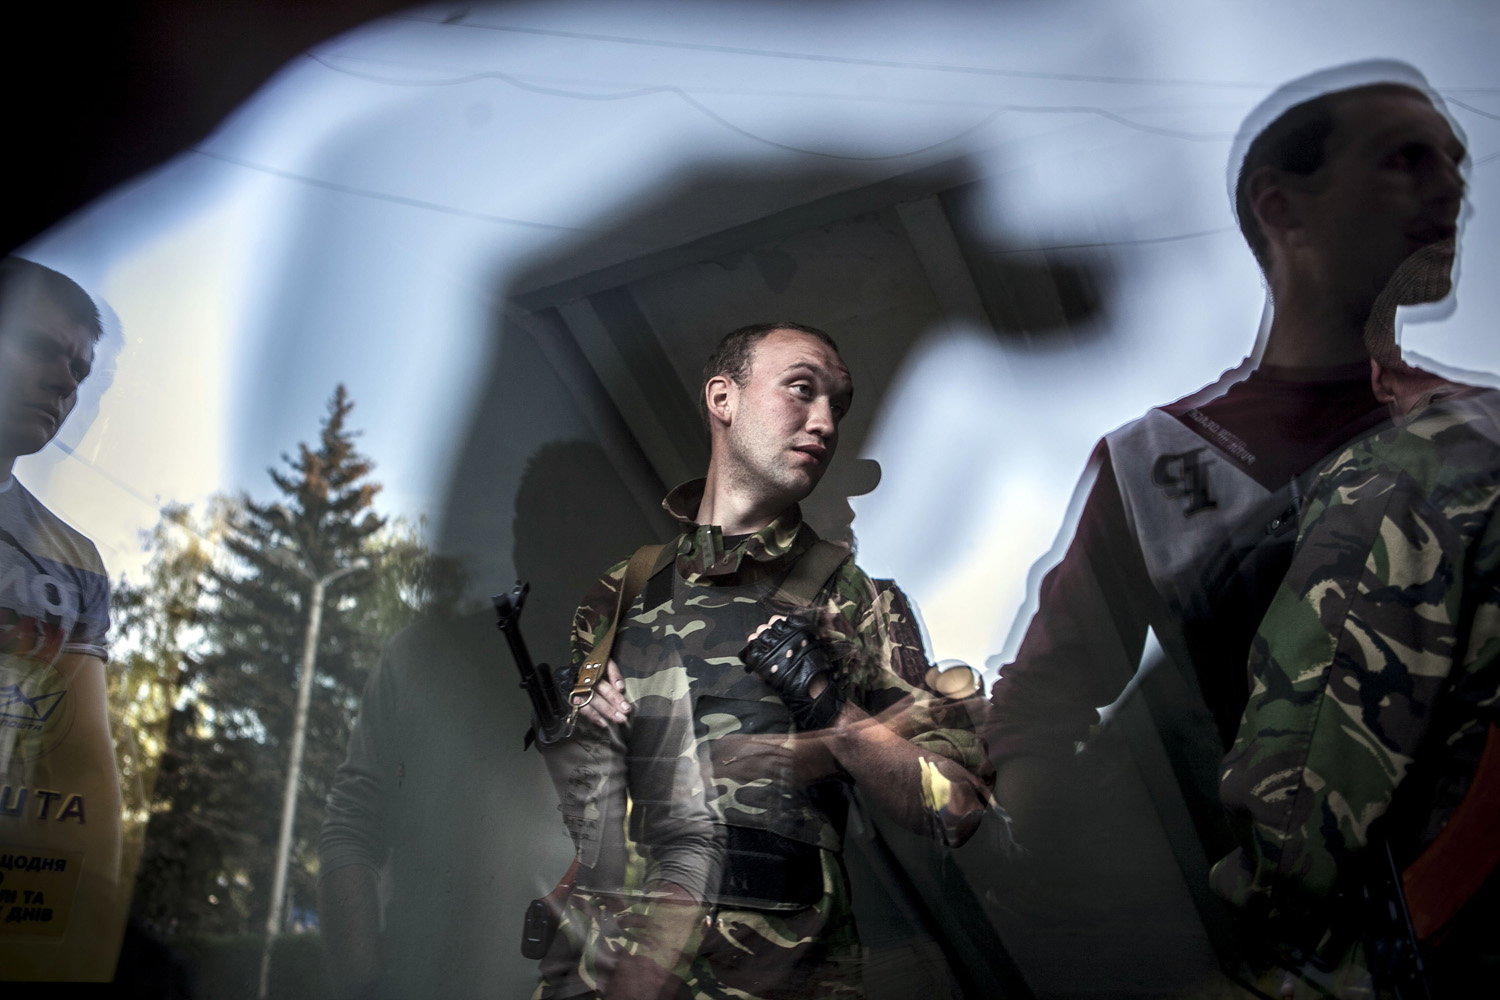 Ukraine - Shooting in Krasnoarmisk